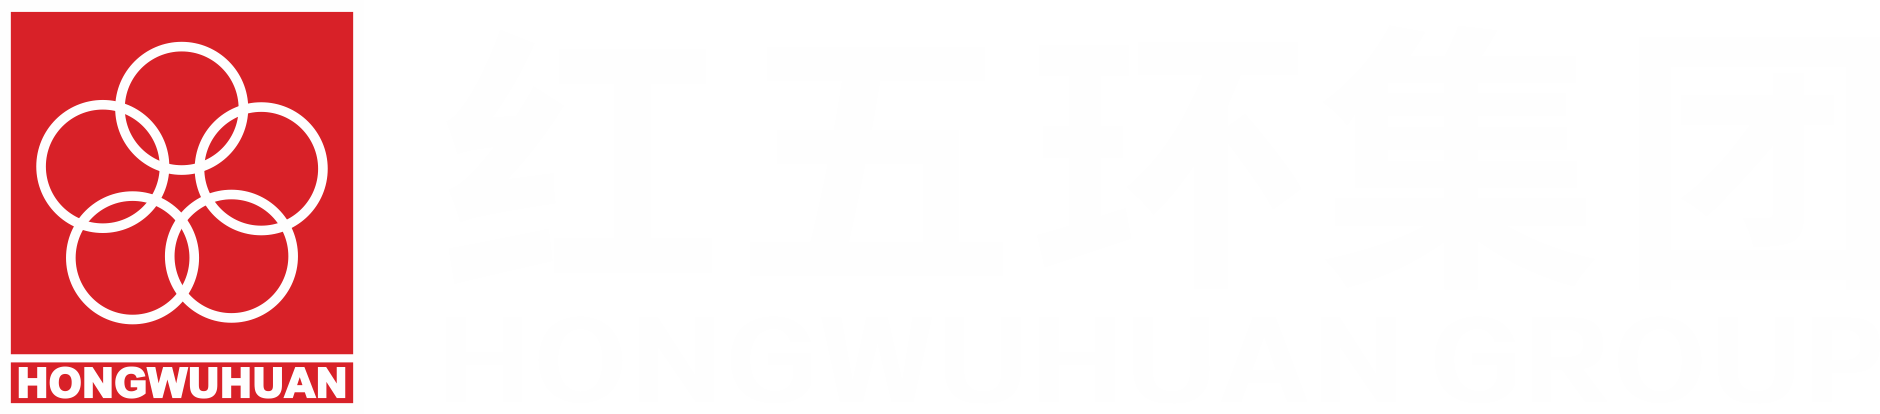 紅五環集團logo.png